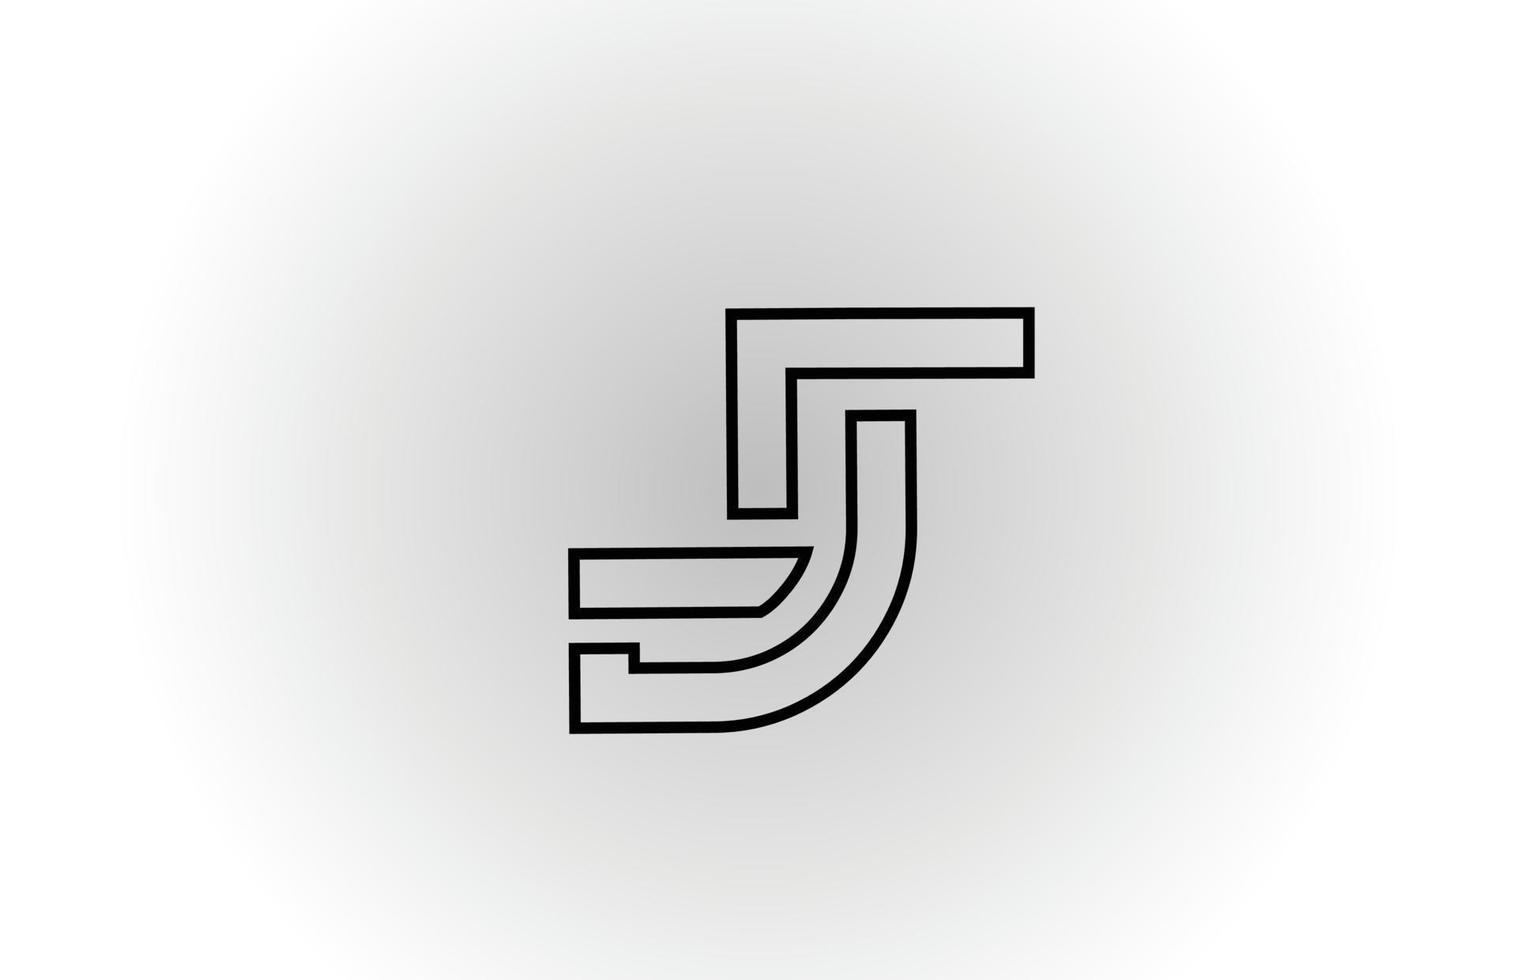 zwart-wit j alfabet letter embleemontwerp pictogram met lijn. creatieve sjabloon voor zaken en bedrijf vector